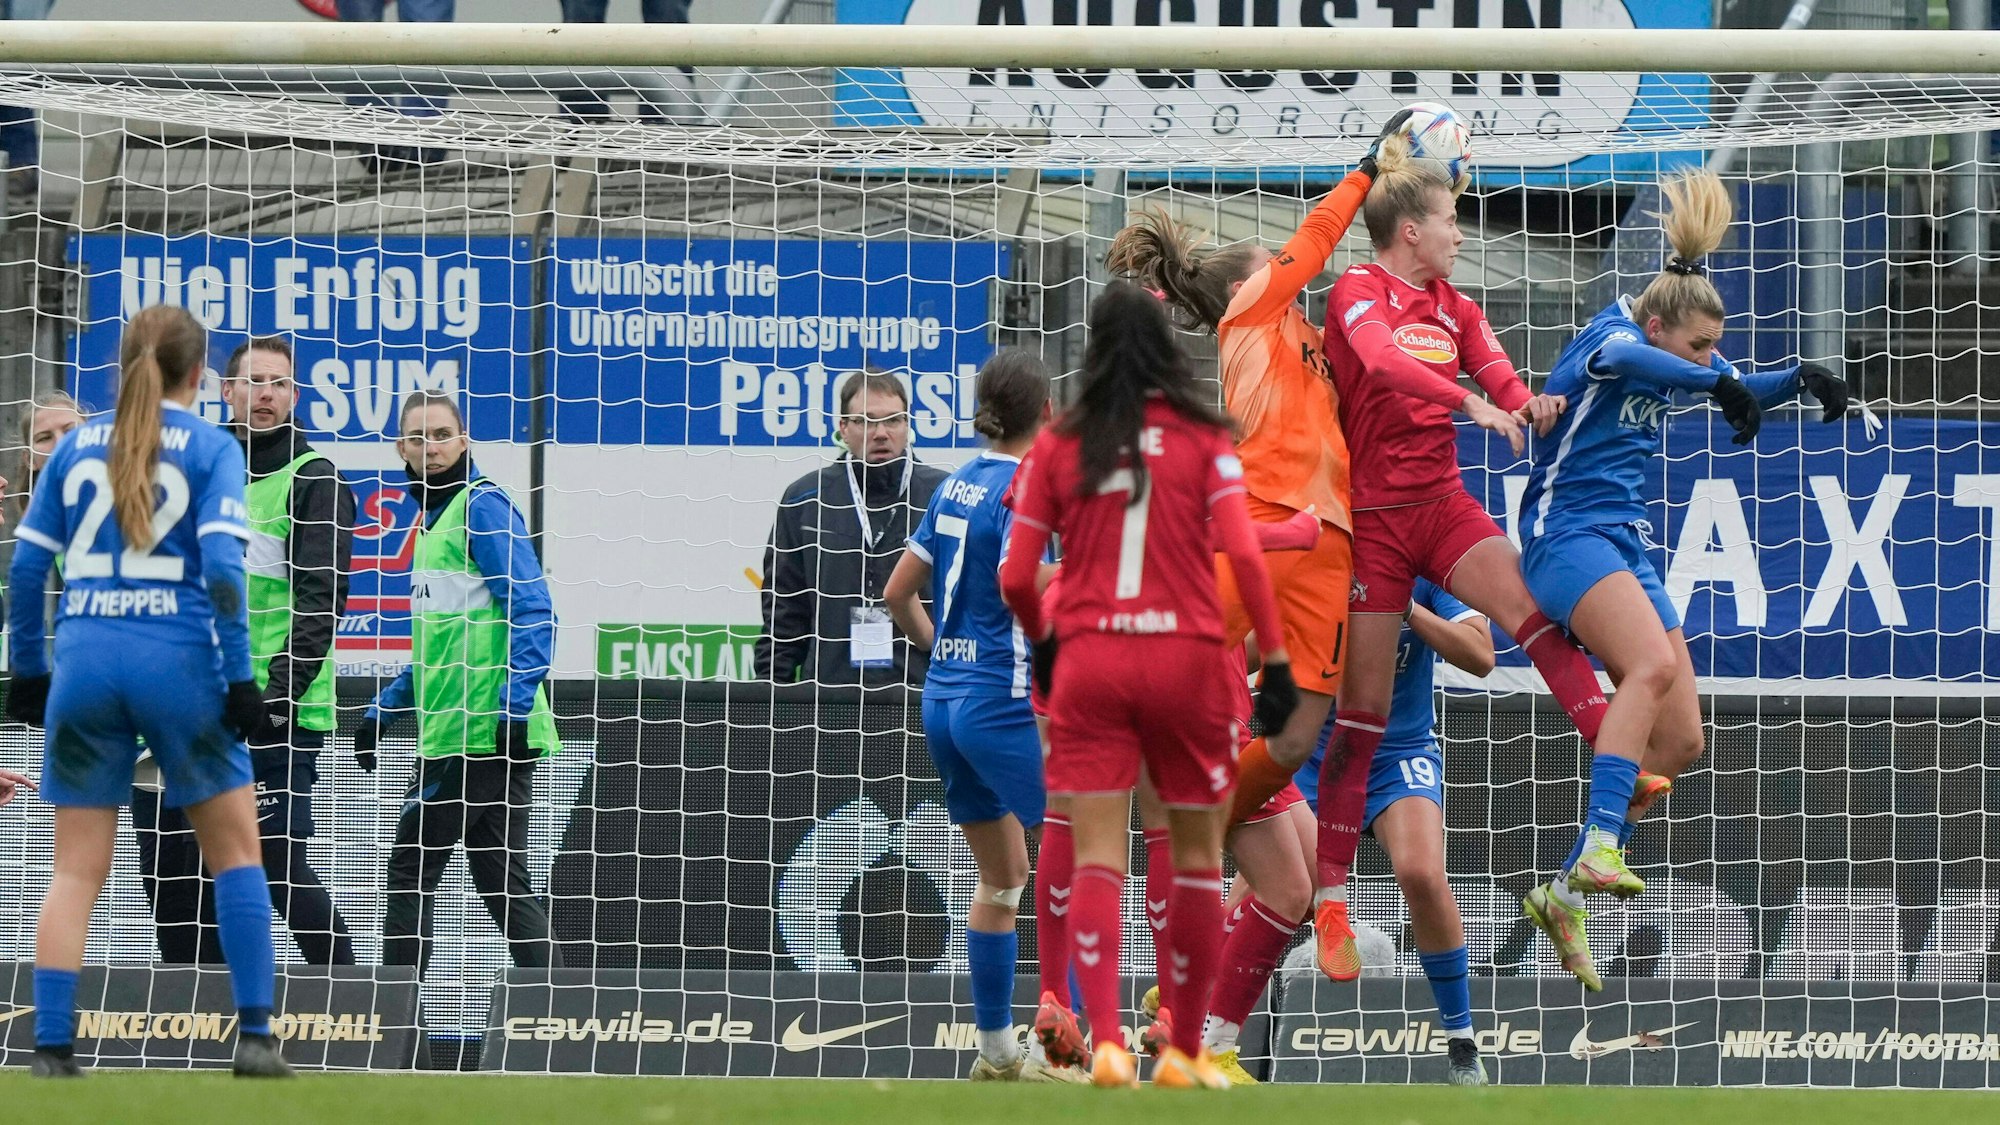 Im Frauen-Spiel zwischen dem SV Meppen und dem 1. FC Köln stürzen sich mehrere Spielerinnen bei einer Ecke ins Getümmel.